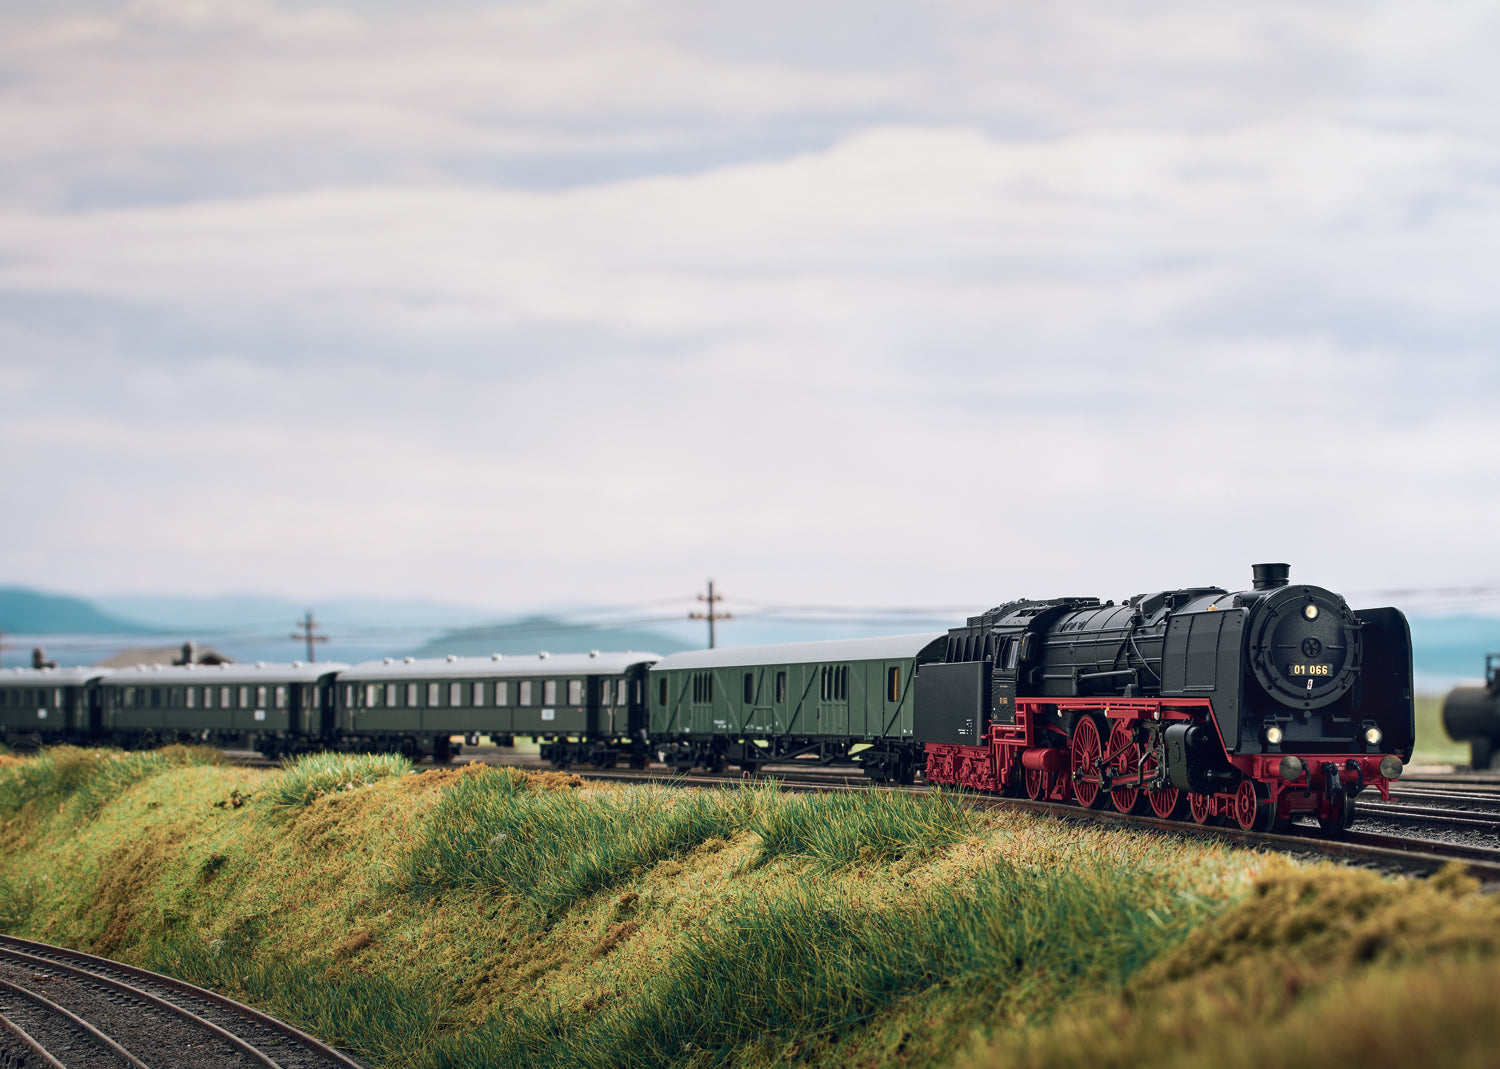 Trix N 16016 Class 01 Steam Locomotive 2022 New Item